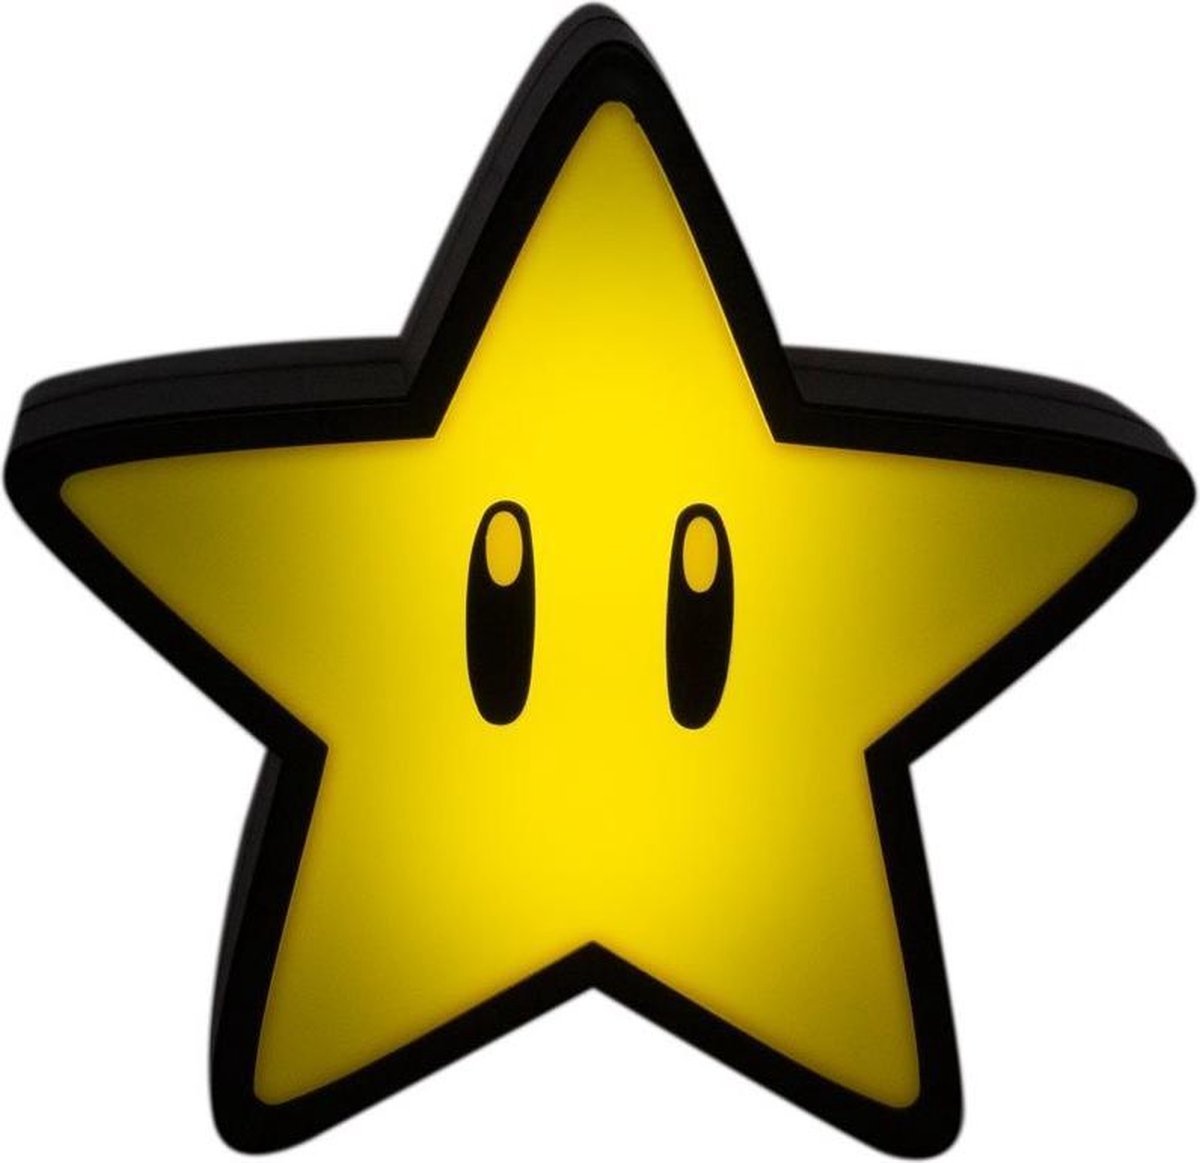 Peluche super étoile Mario Nintendo